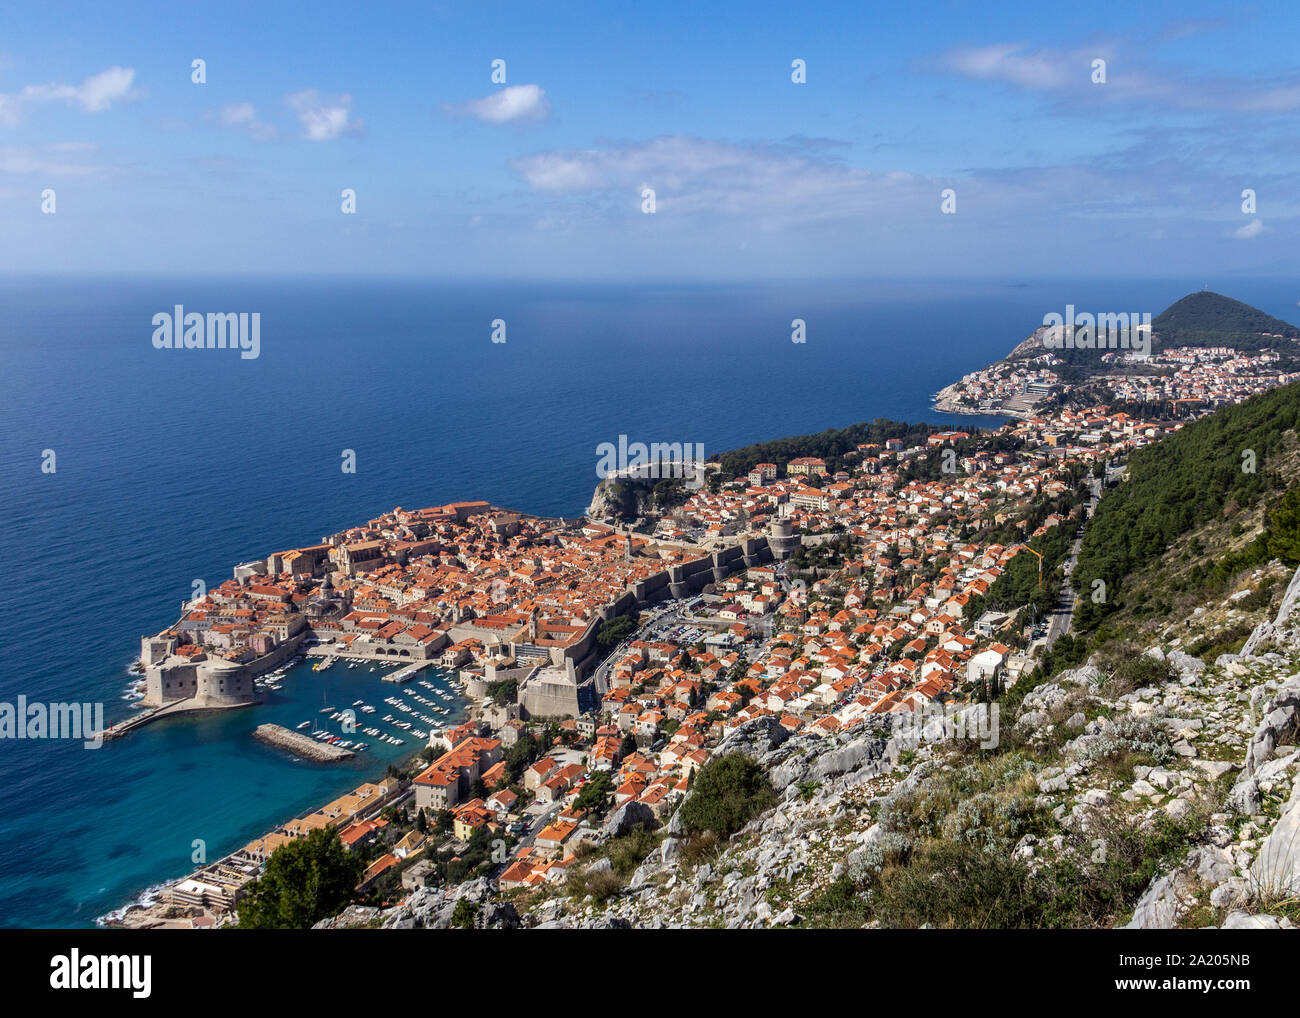 Vista de la ciudad vieja de Dubrovnik desde un mirador elevado por encima del nivel del mar Foto de stock